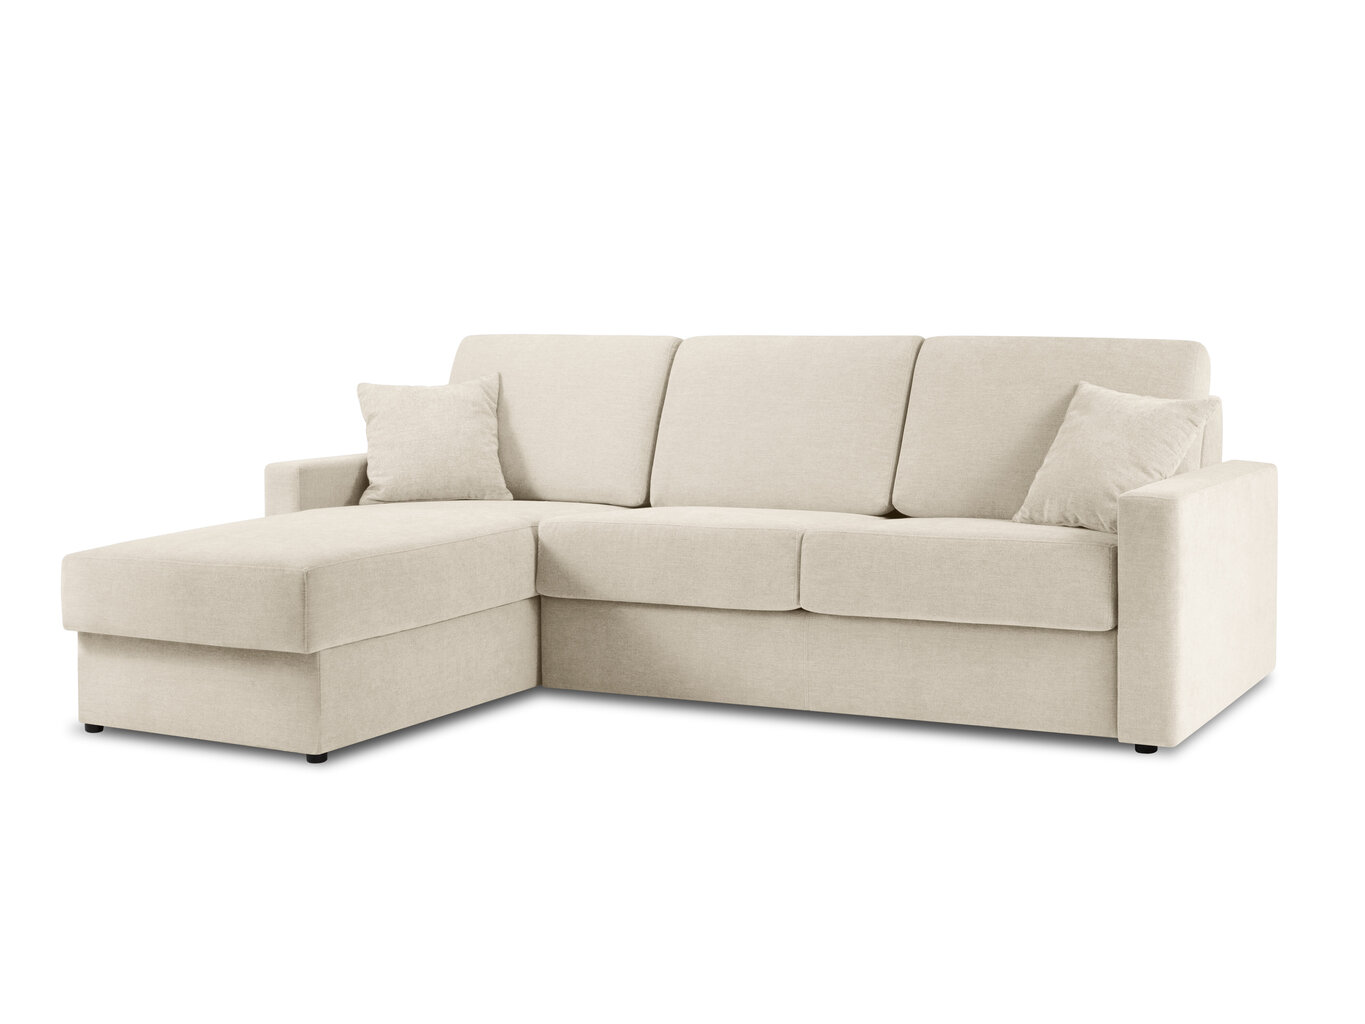 Stūra dīvāns Windsor&Co Portia S, smilškrāsas cena un informācija | Stūra dīvāni | 220.lv